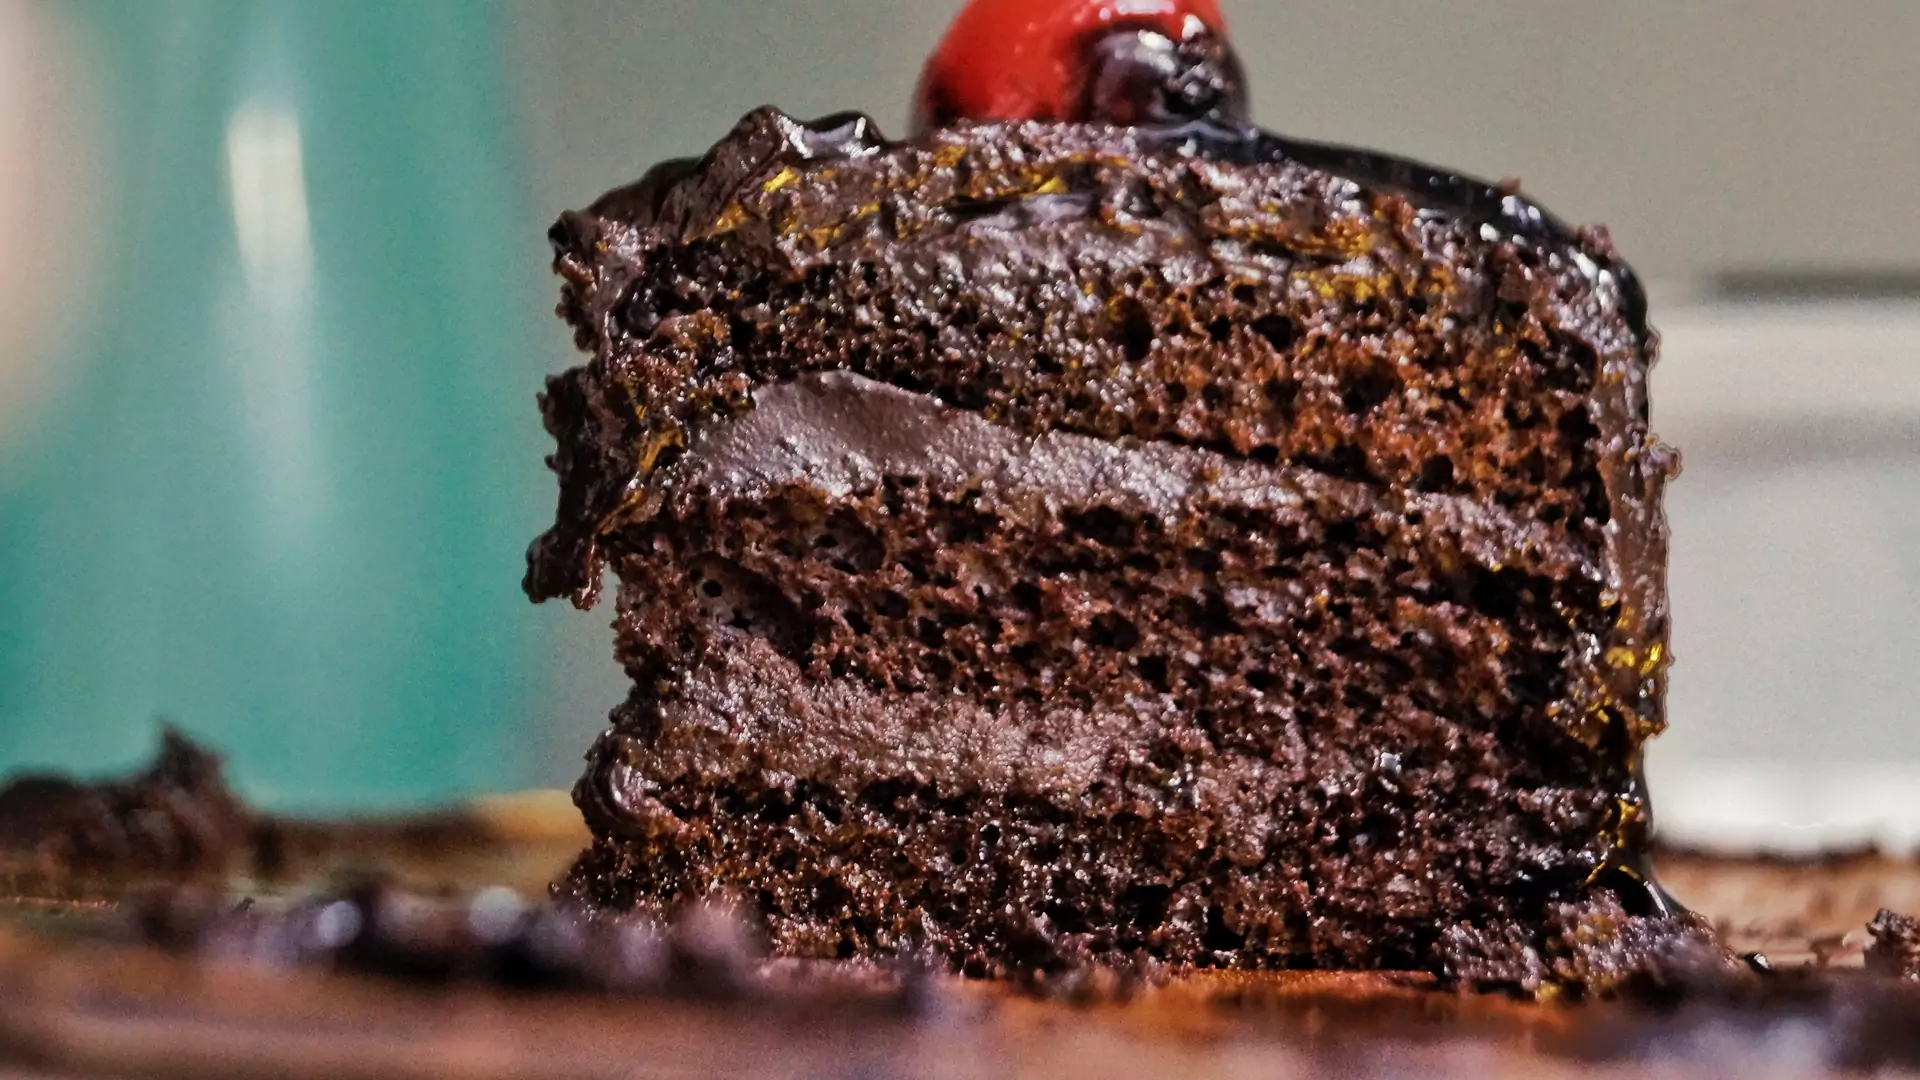 Rozkoszne czekoladowe ciasto, które będzie ci się śnić po nocach. 30 minut i gotowe